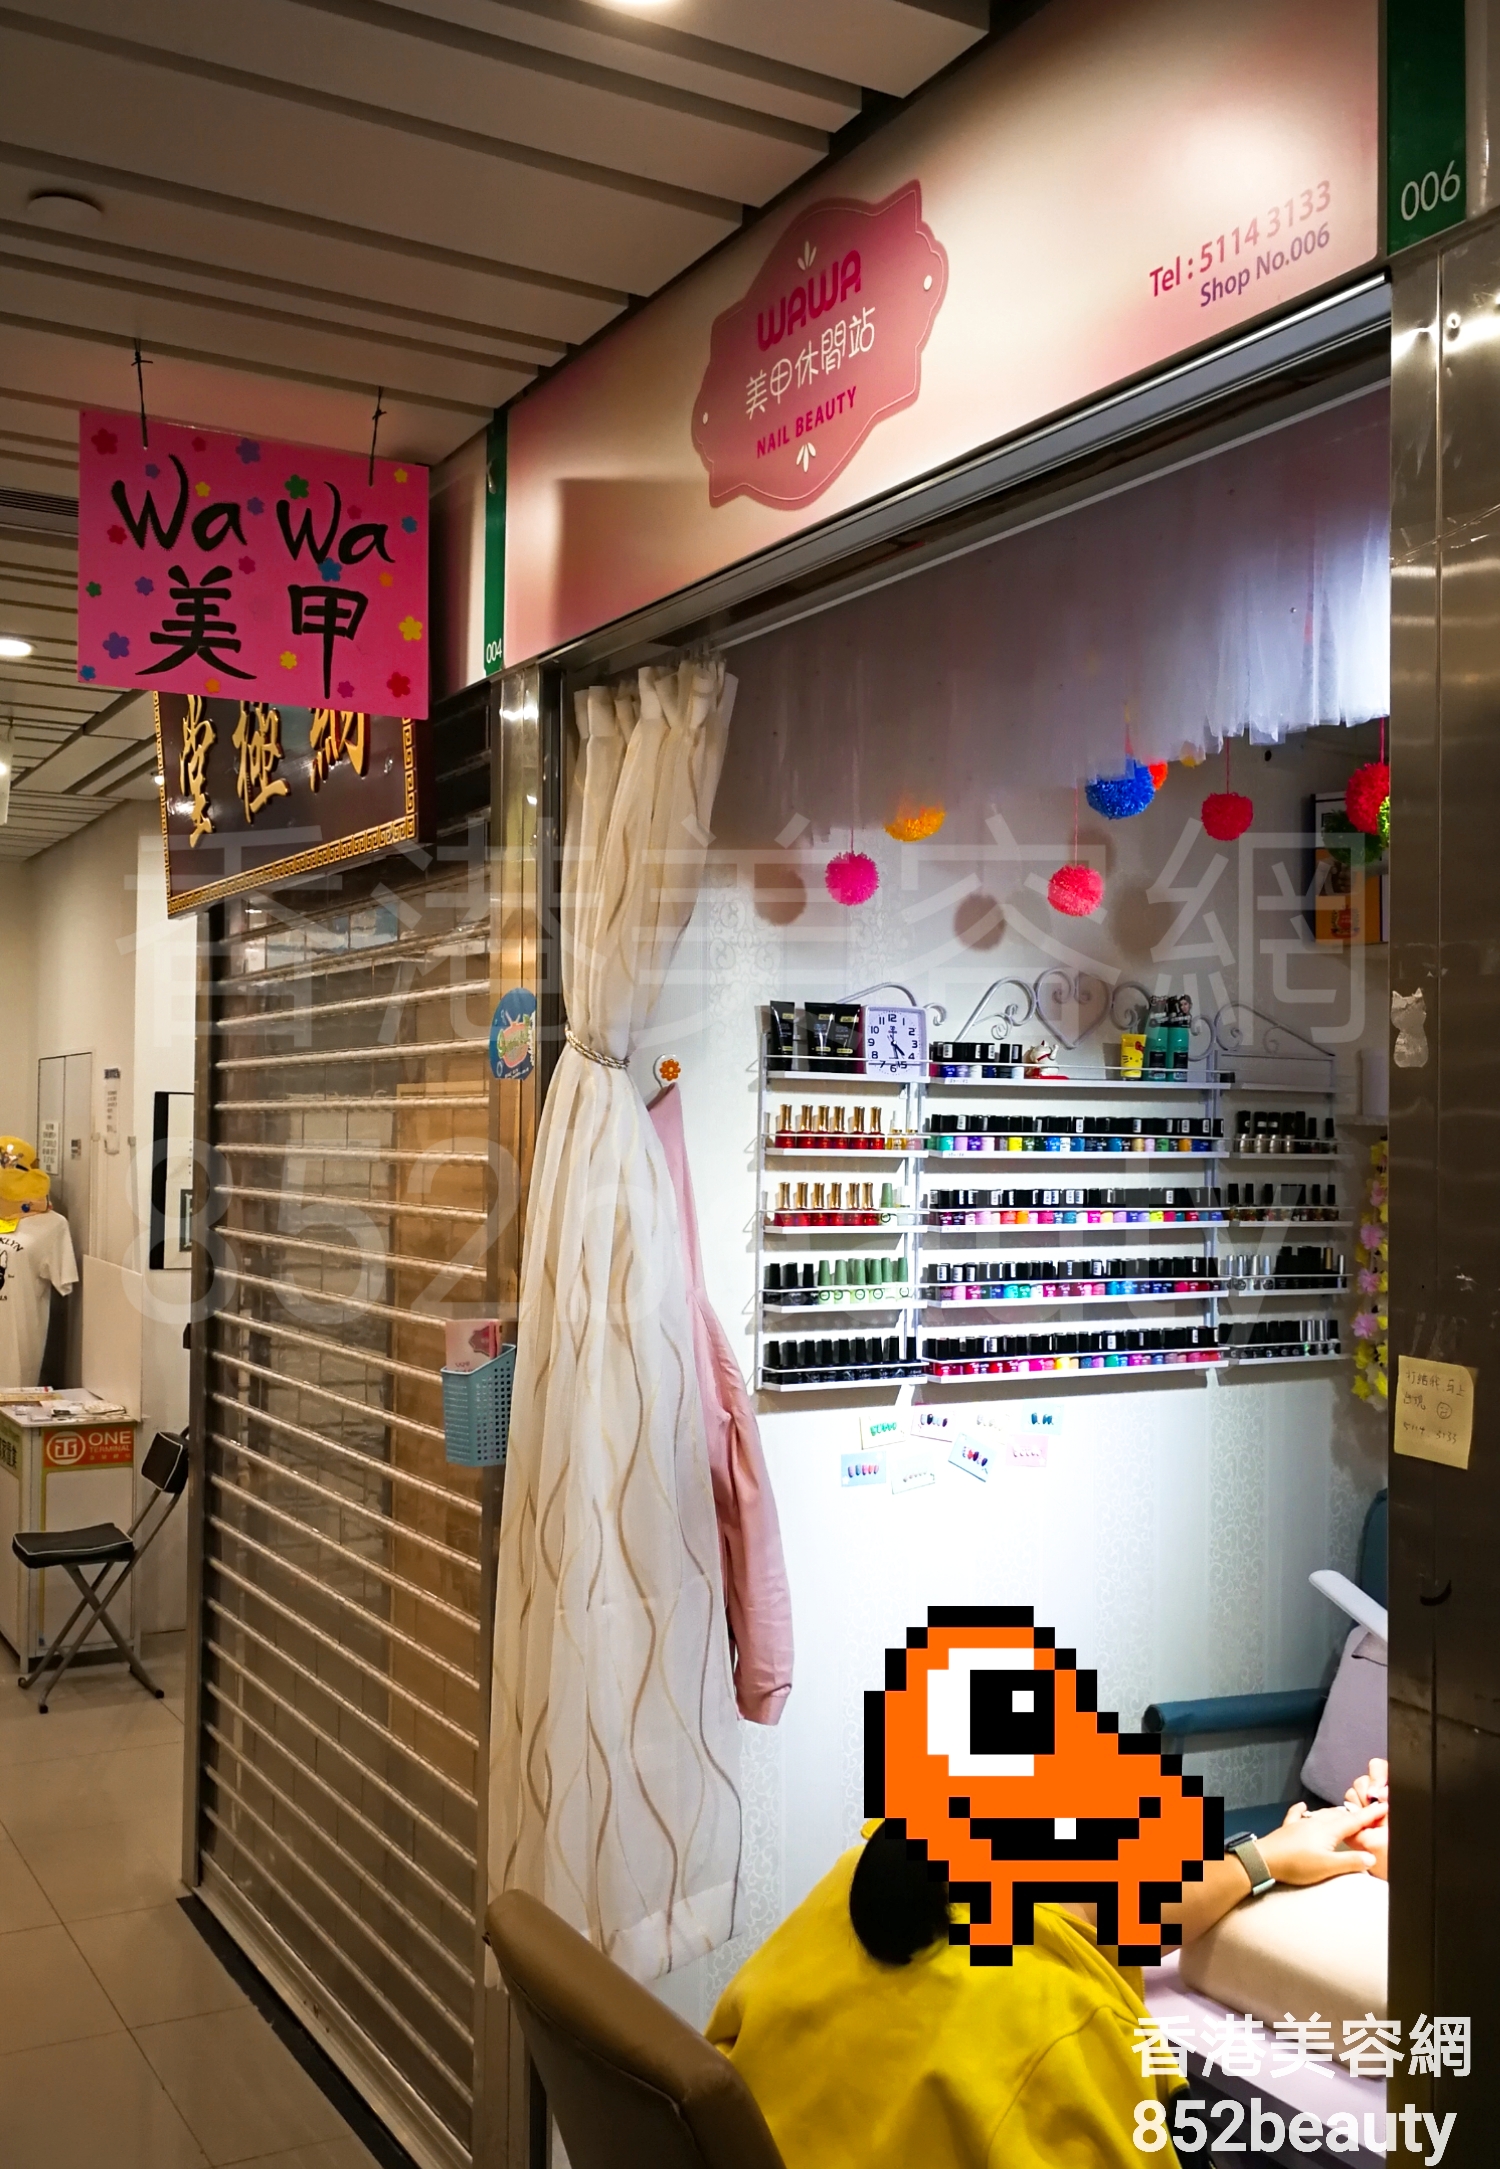 香港美容網 Hong Kong Beauty Salon 美容院 / 美容師: WaWa 美甲